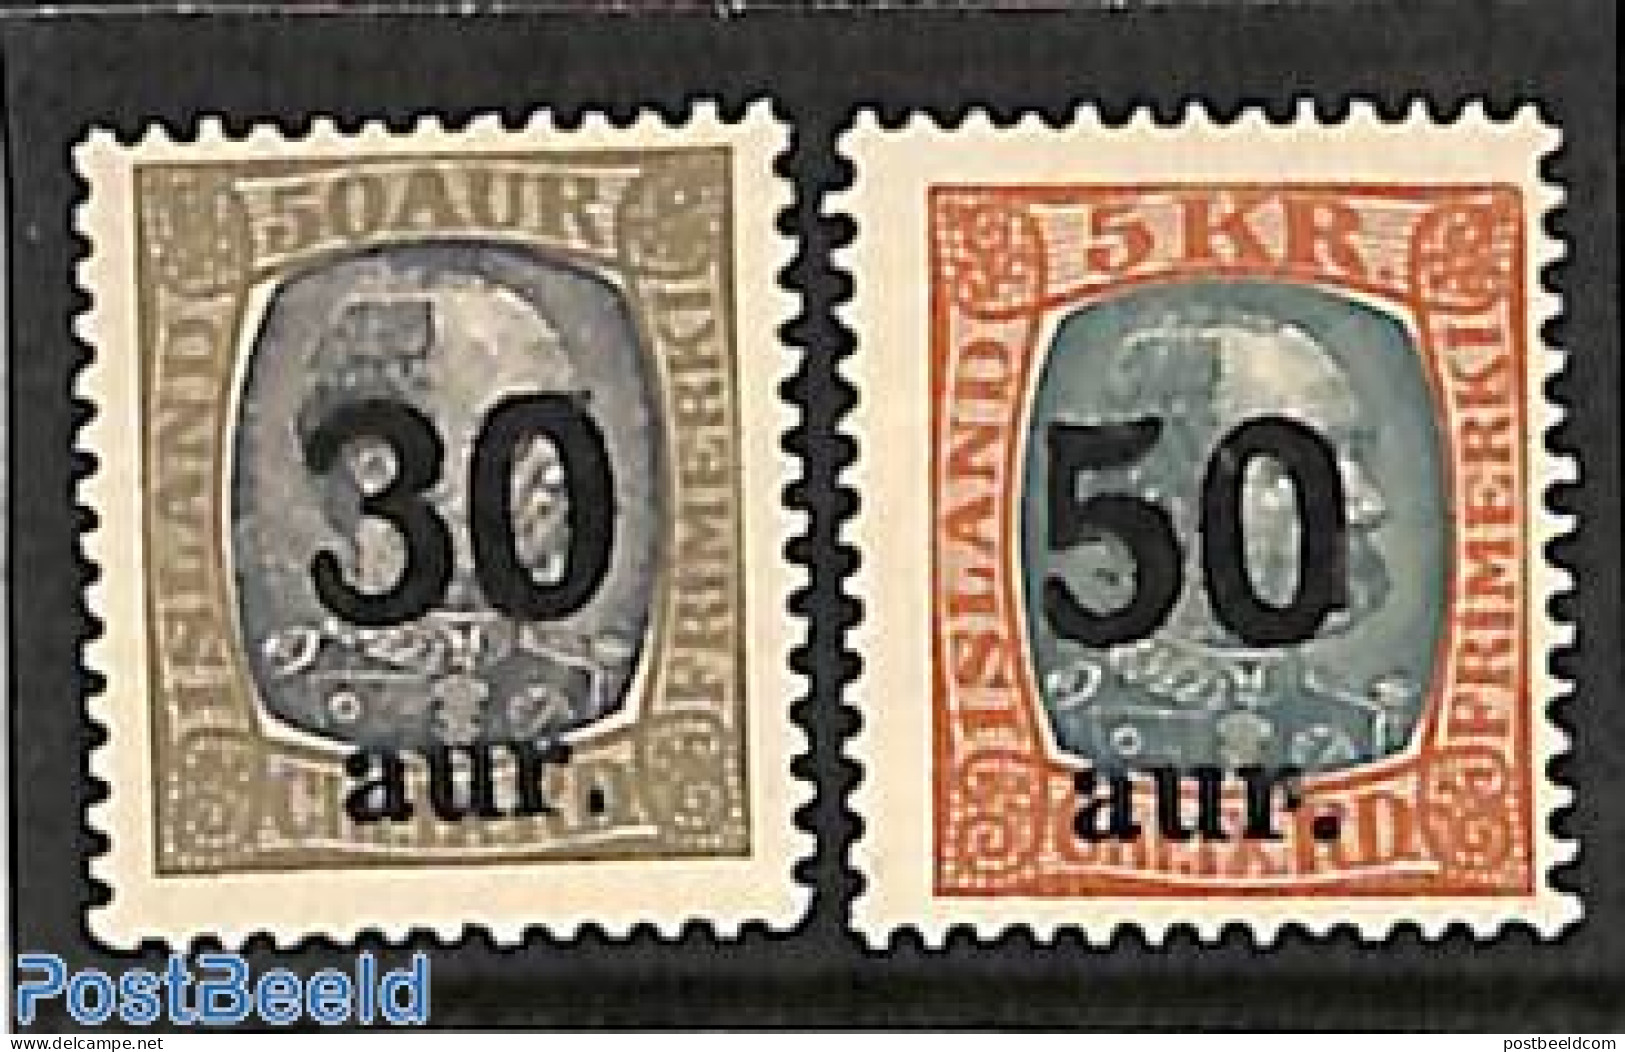 Iceland 1925 Overprints 2v, Unused (hinged) - Nuovi